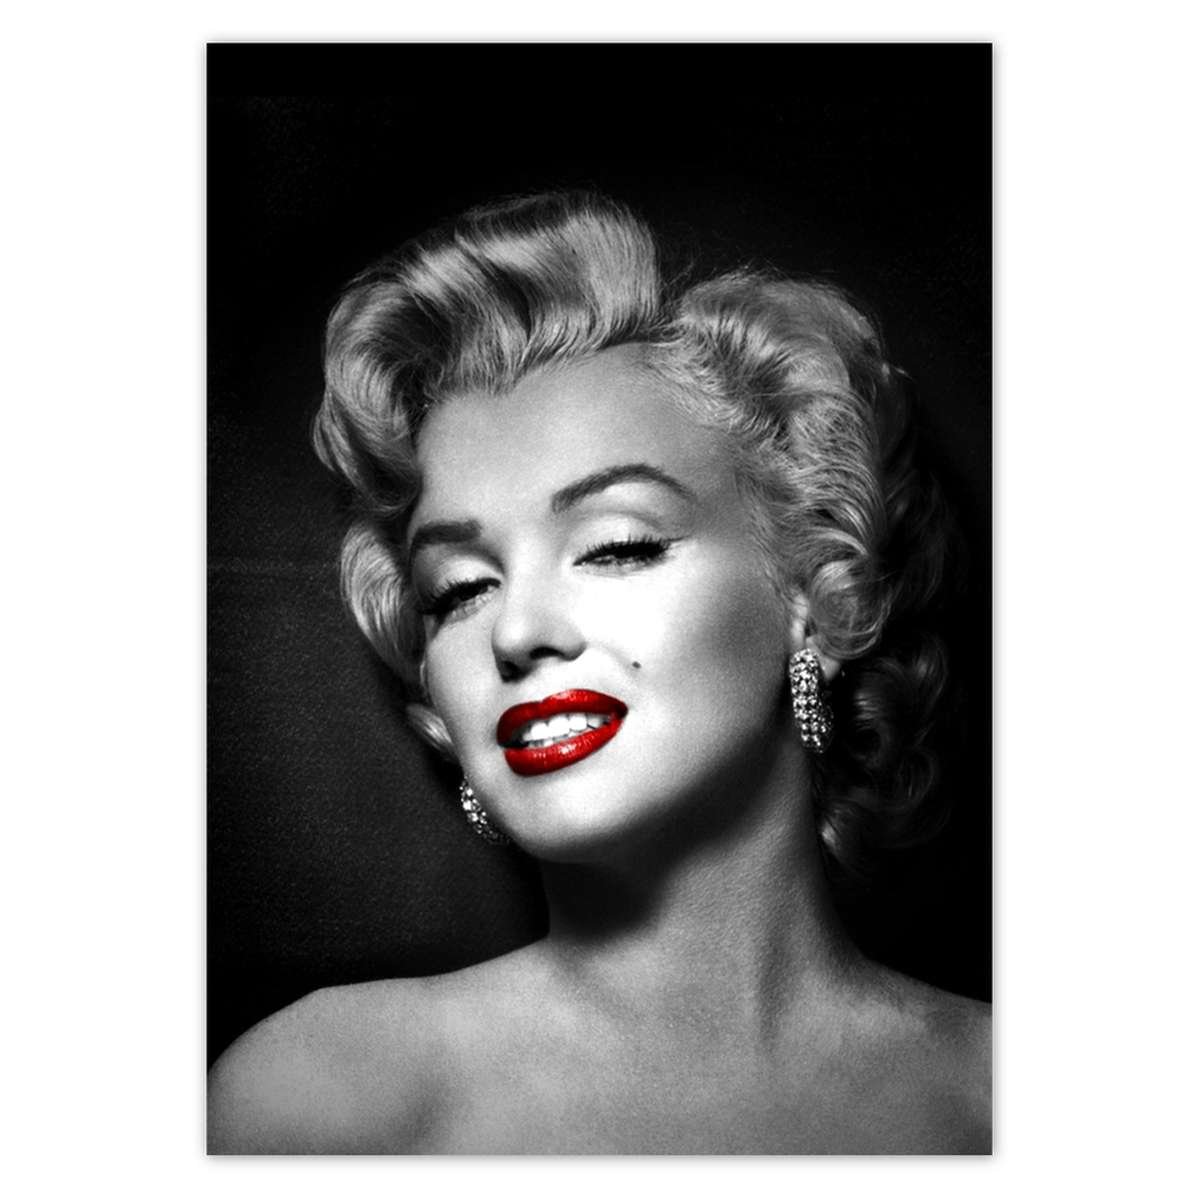 Plakat A4 Pion Marilyn Monroe Pieprzyk Zesmakiem Sklep Empikcom 9343